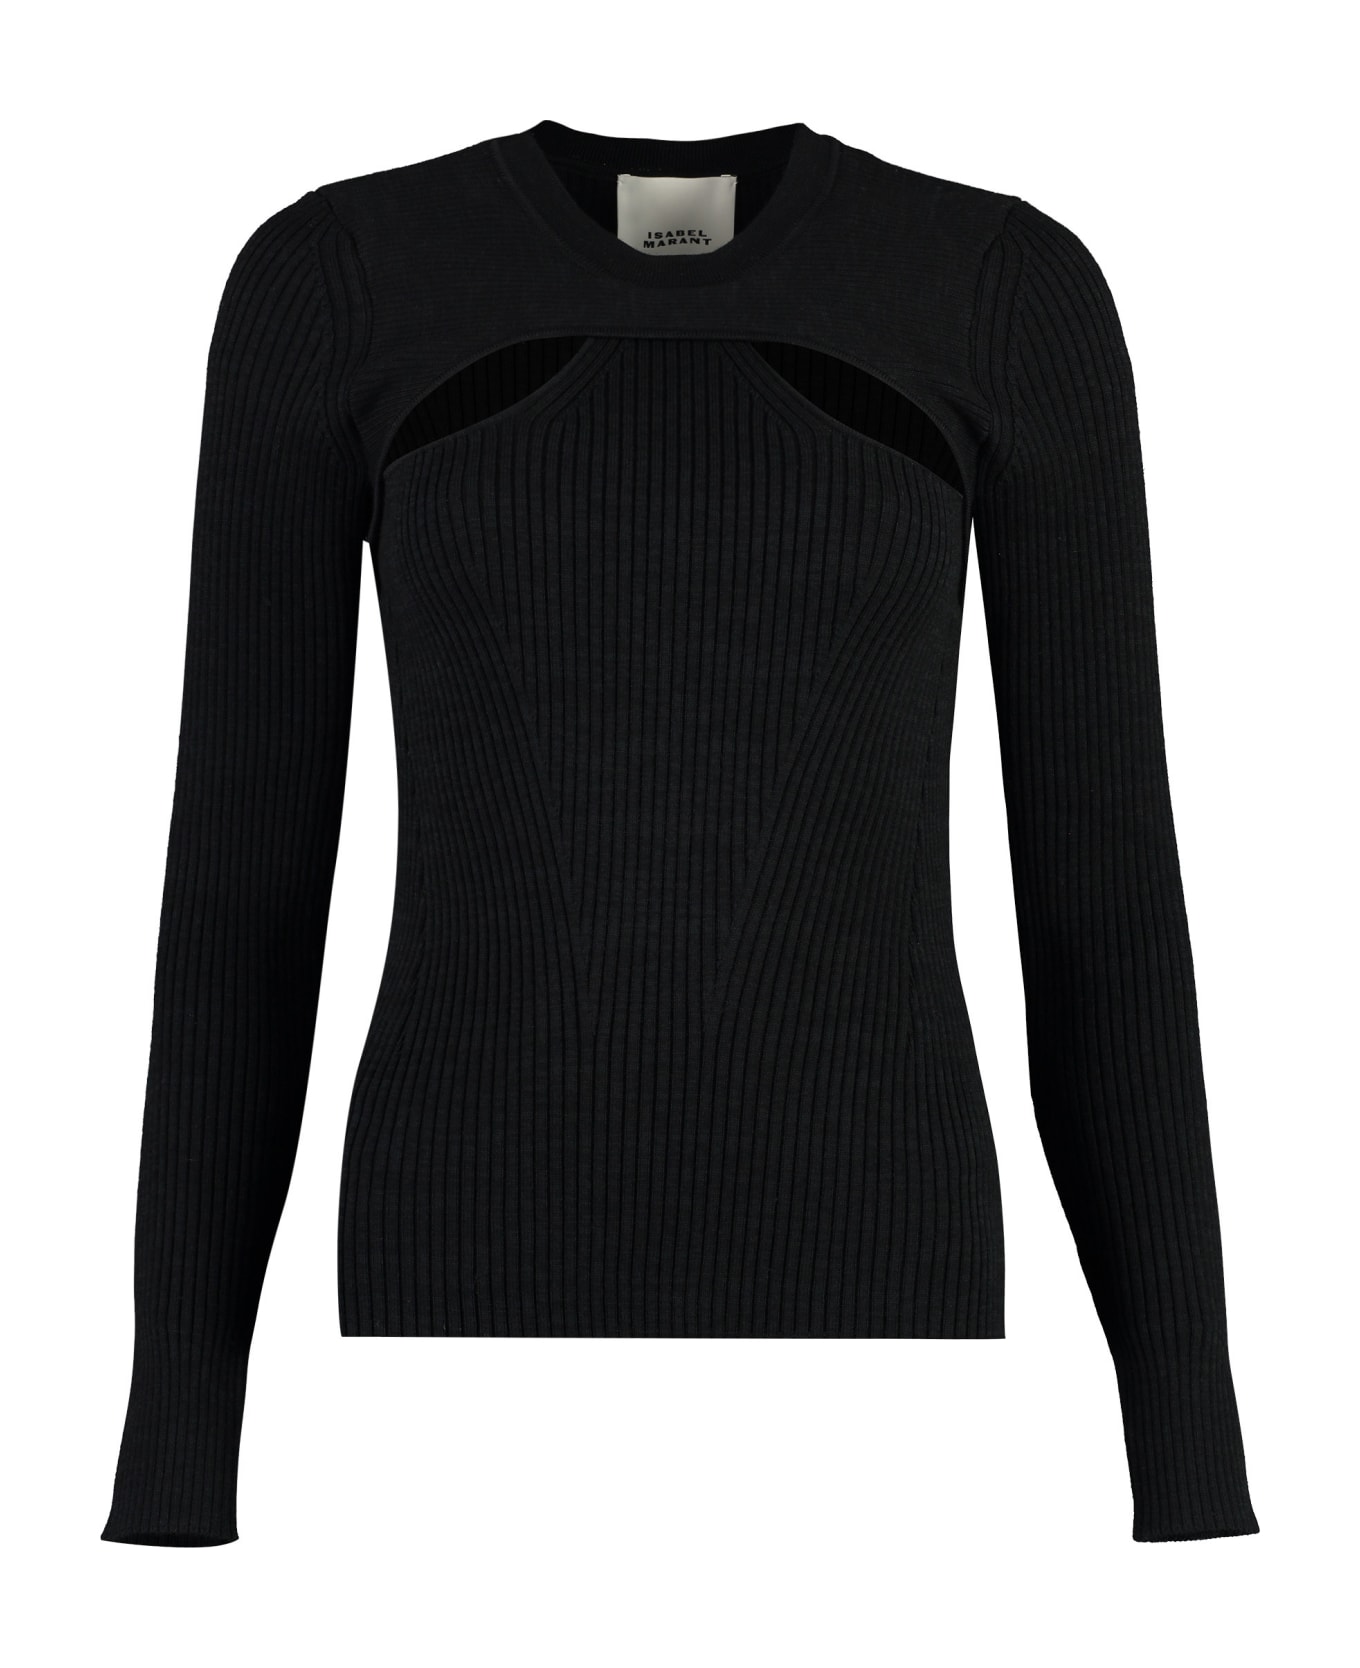 Isabel Marant Zana Merino Wool Sweater - black ニットウェア